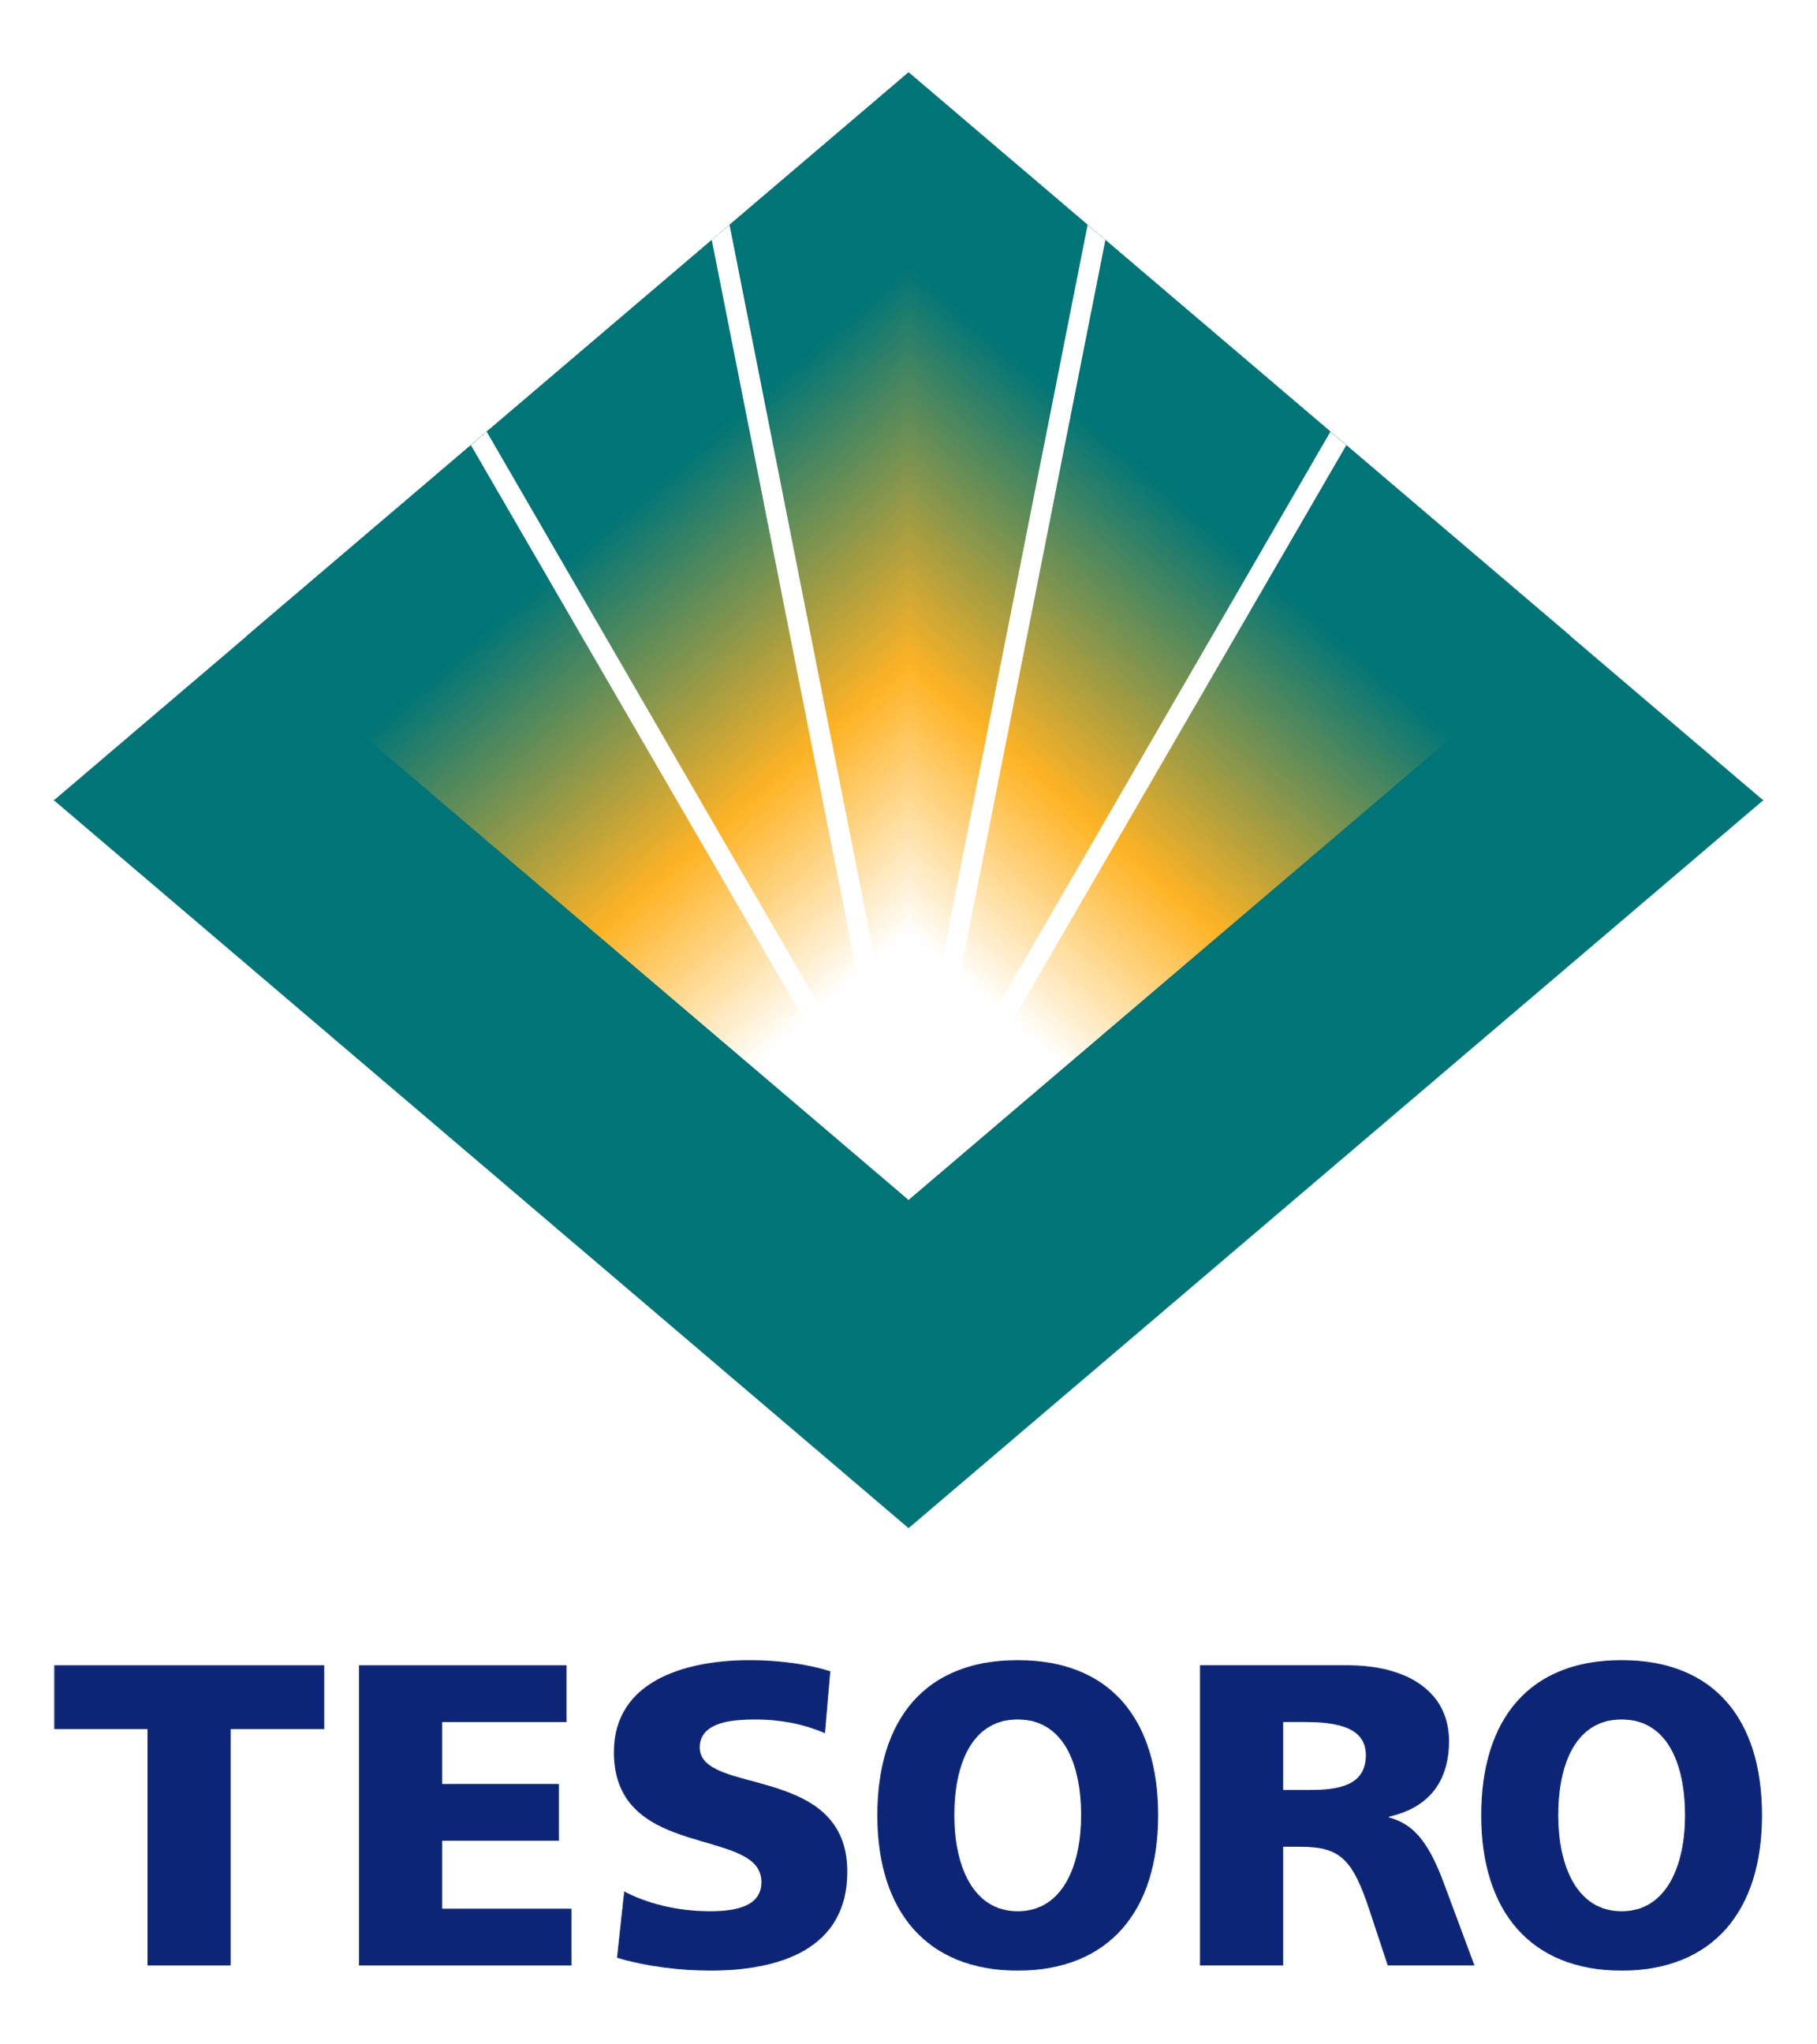 Tesoro Logo - Tesoro Logo PNG Image - PurePNG | Free transparent CC0 PNG Image Library